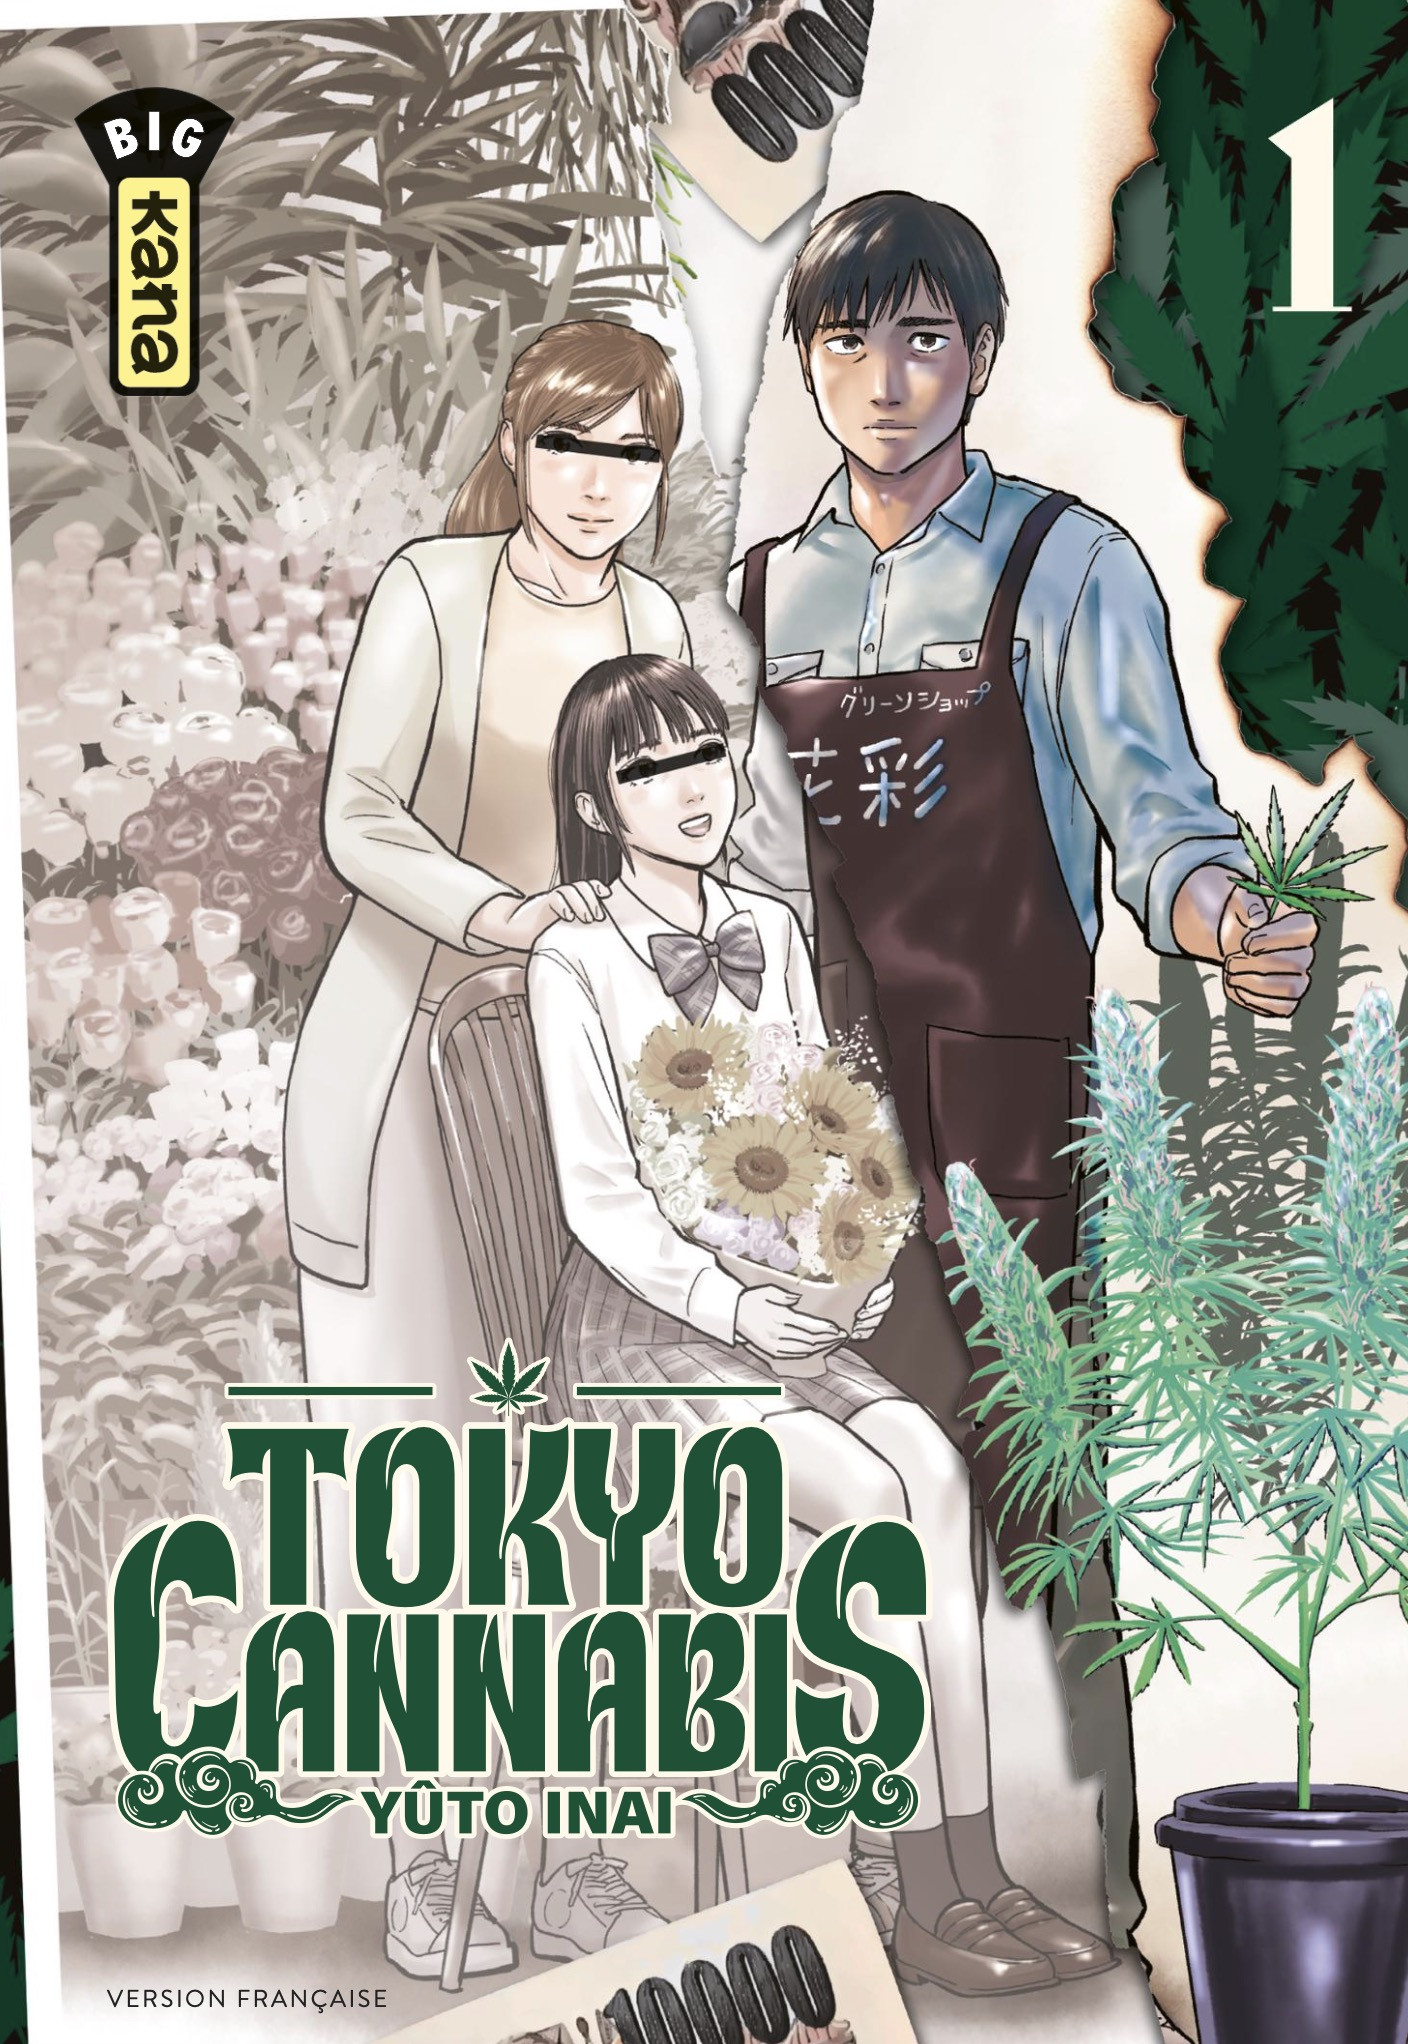 Tokyo Cannabis